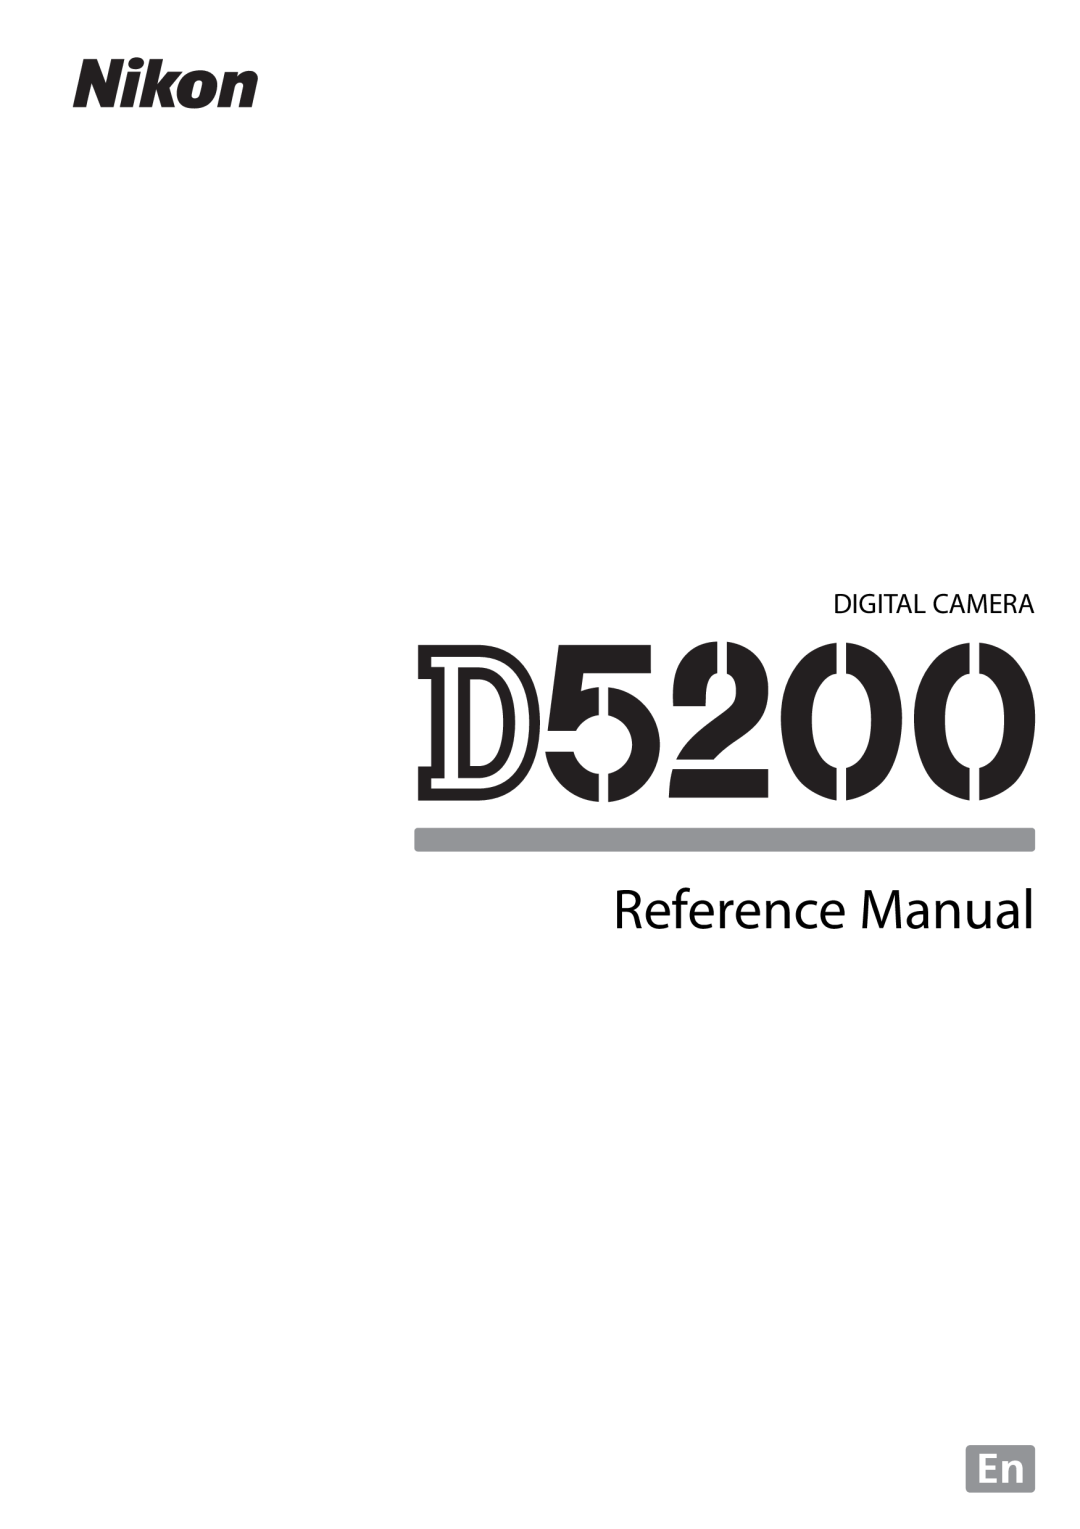 Nikon D5200 18105mm Kit, D5200 1855mm Kit Bronze, D5200 (18-105mm Kit), 1501, 1507 manual Digital Camera, Reference Manual 